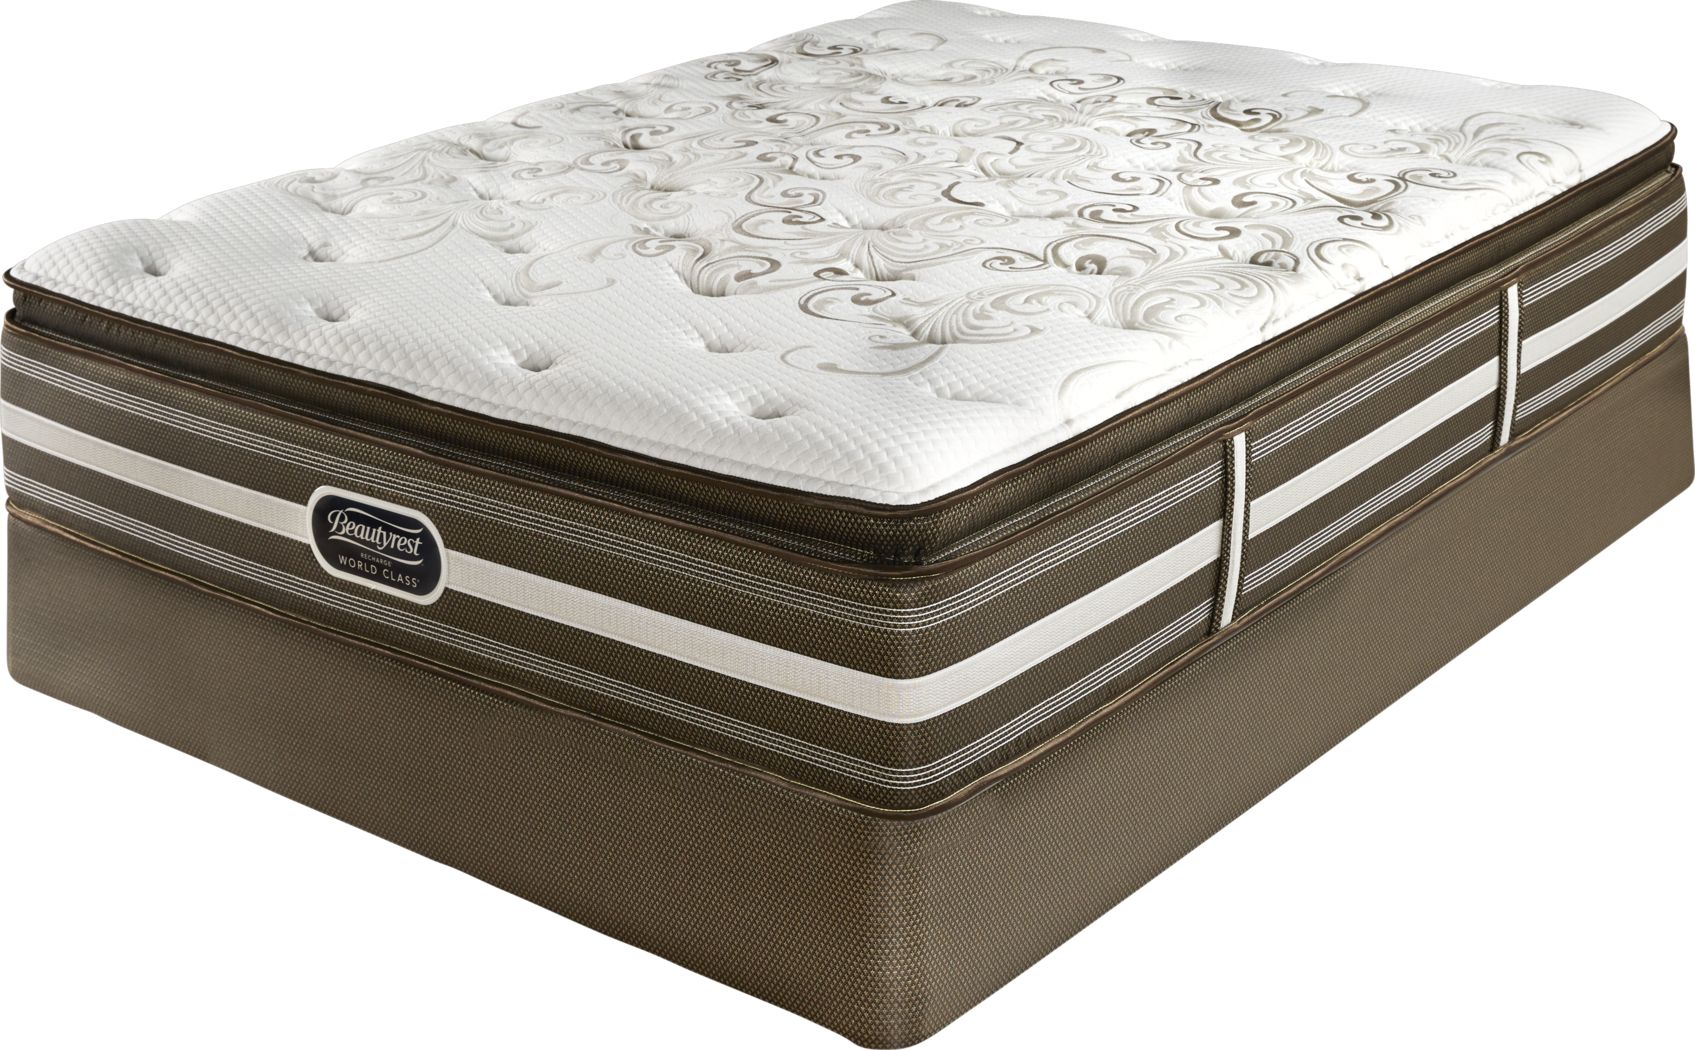 beautyrest recharge signature select queen mattress